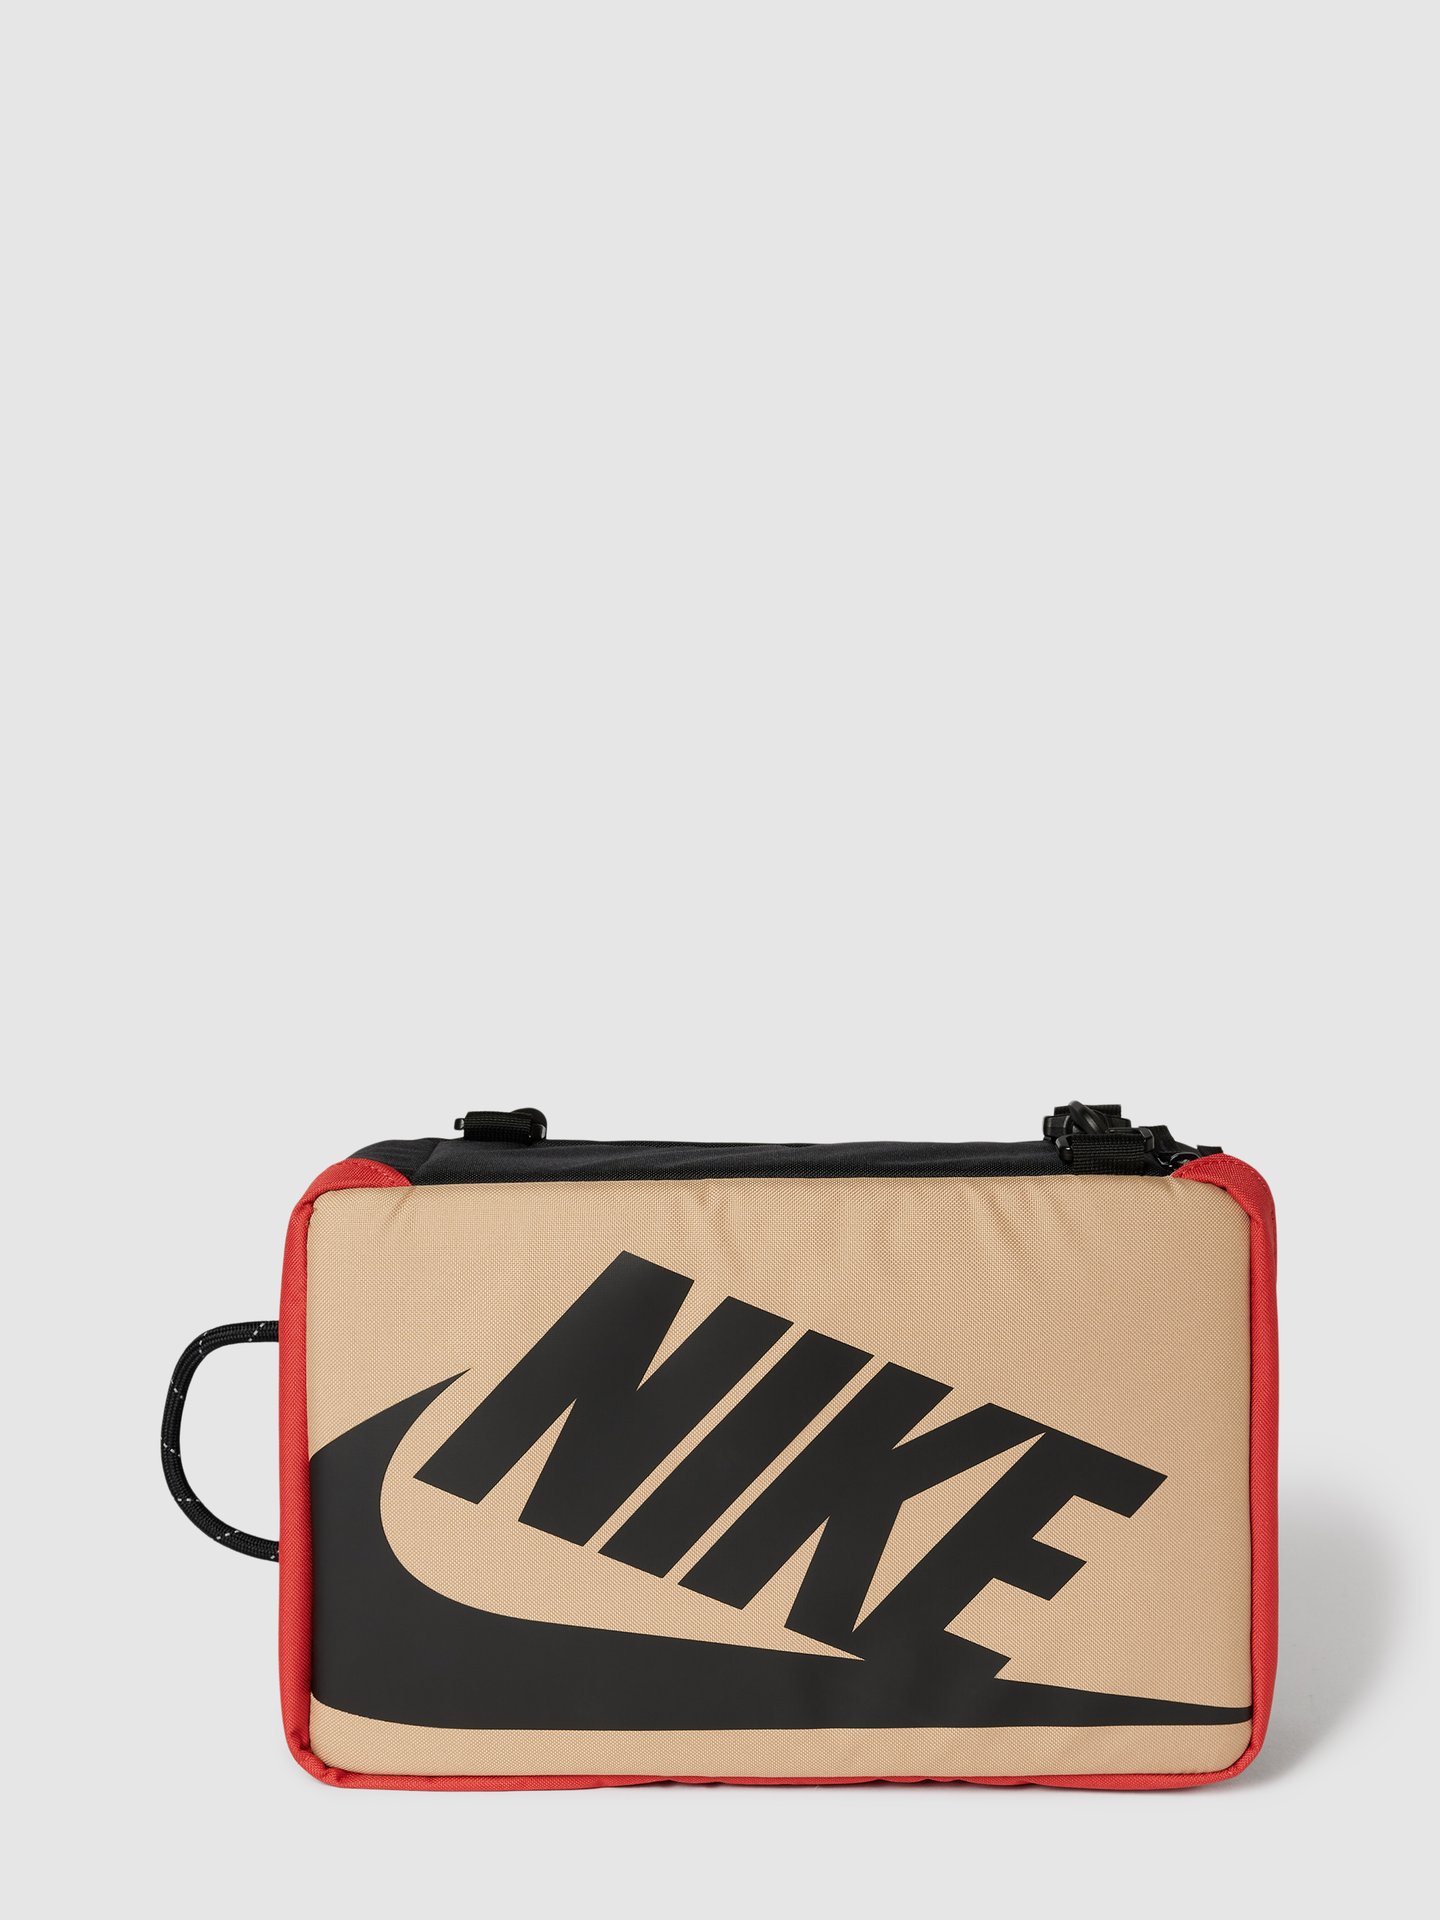 ir de compras Elegante audible Nike Umhängetasche mit Label-Detail Modell 'Nike Shoe Box Bag' (schwarz)  online kaufen